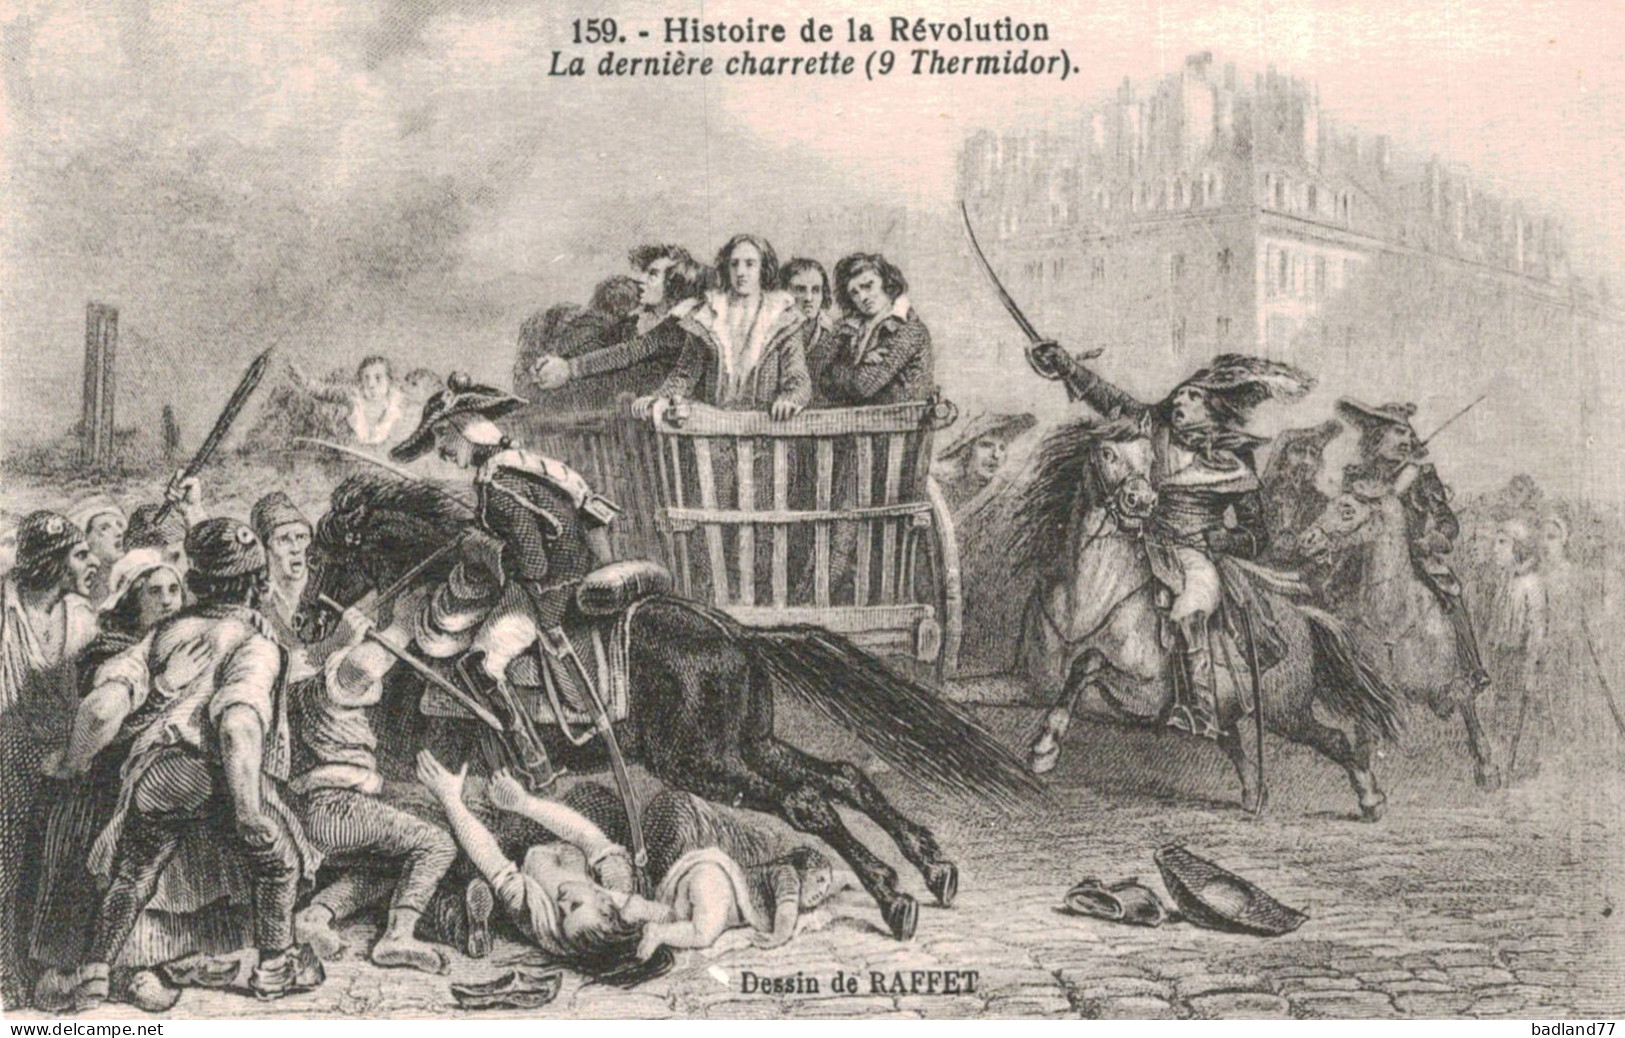 Lot 19 cartes postales - Histoire de la Révolution